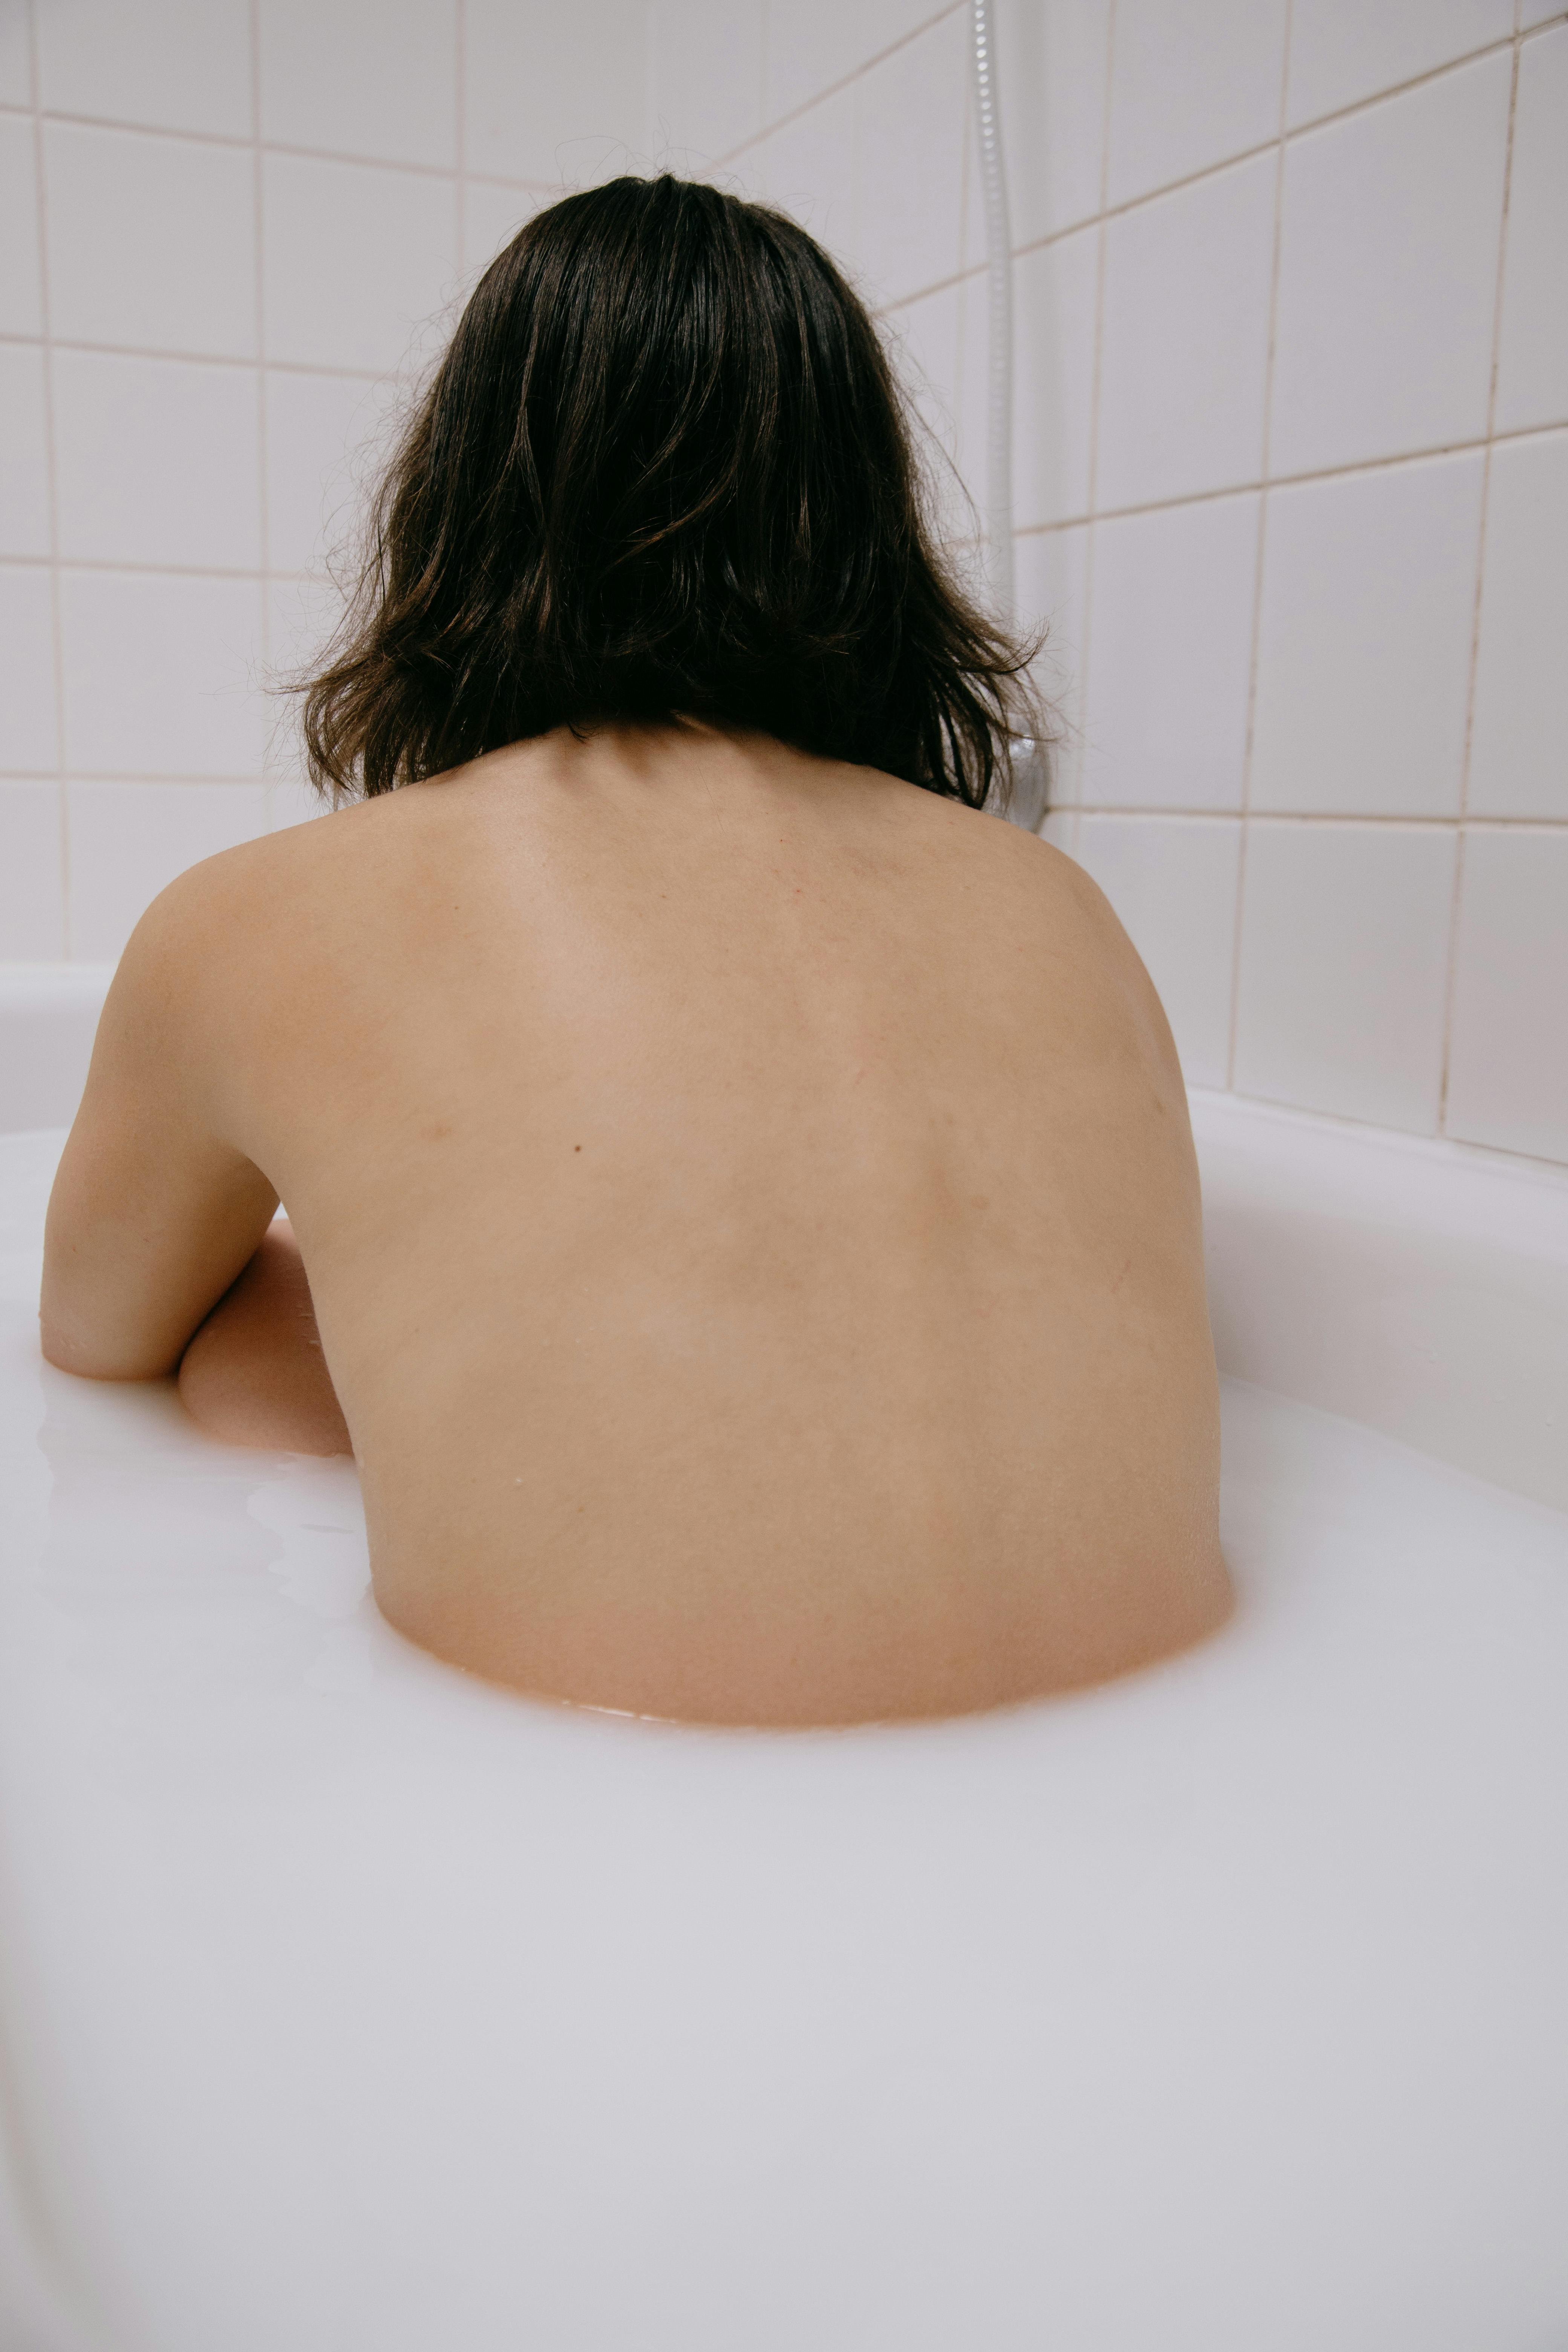 Girl Nude In Bathtub